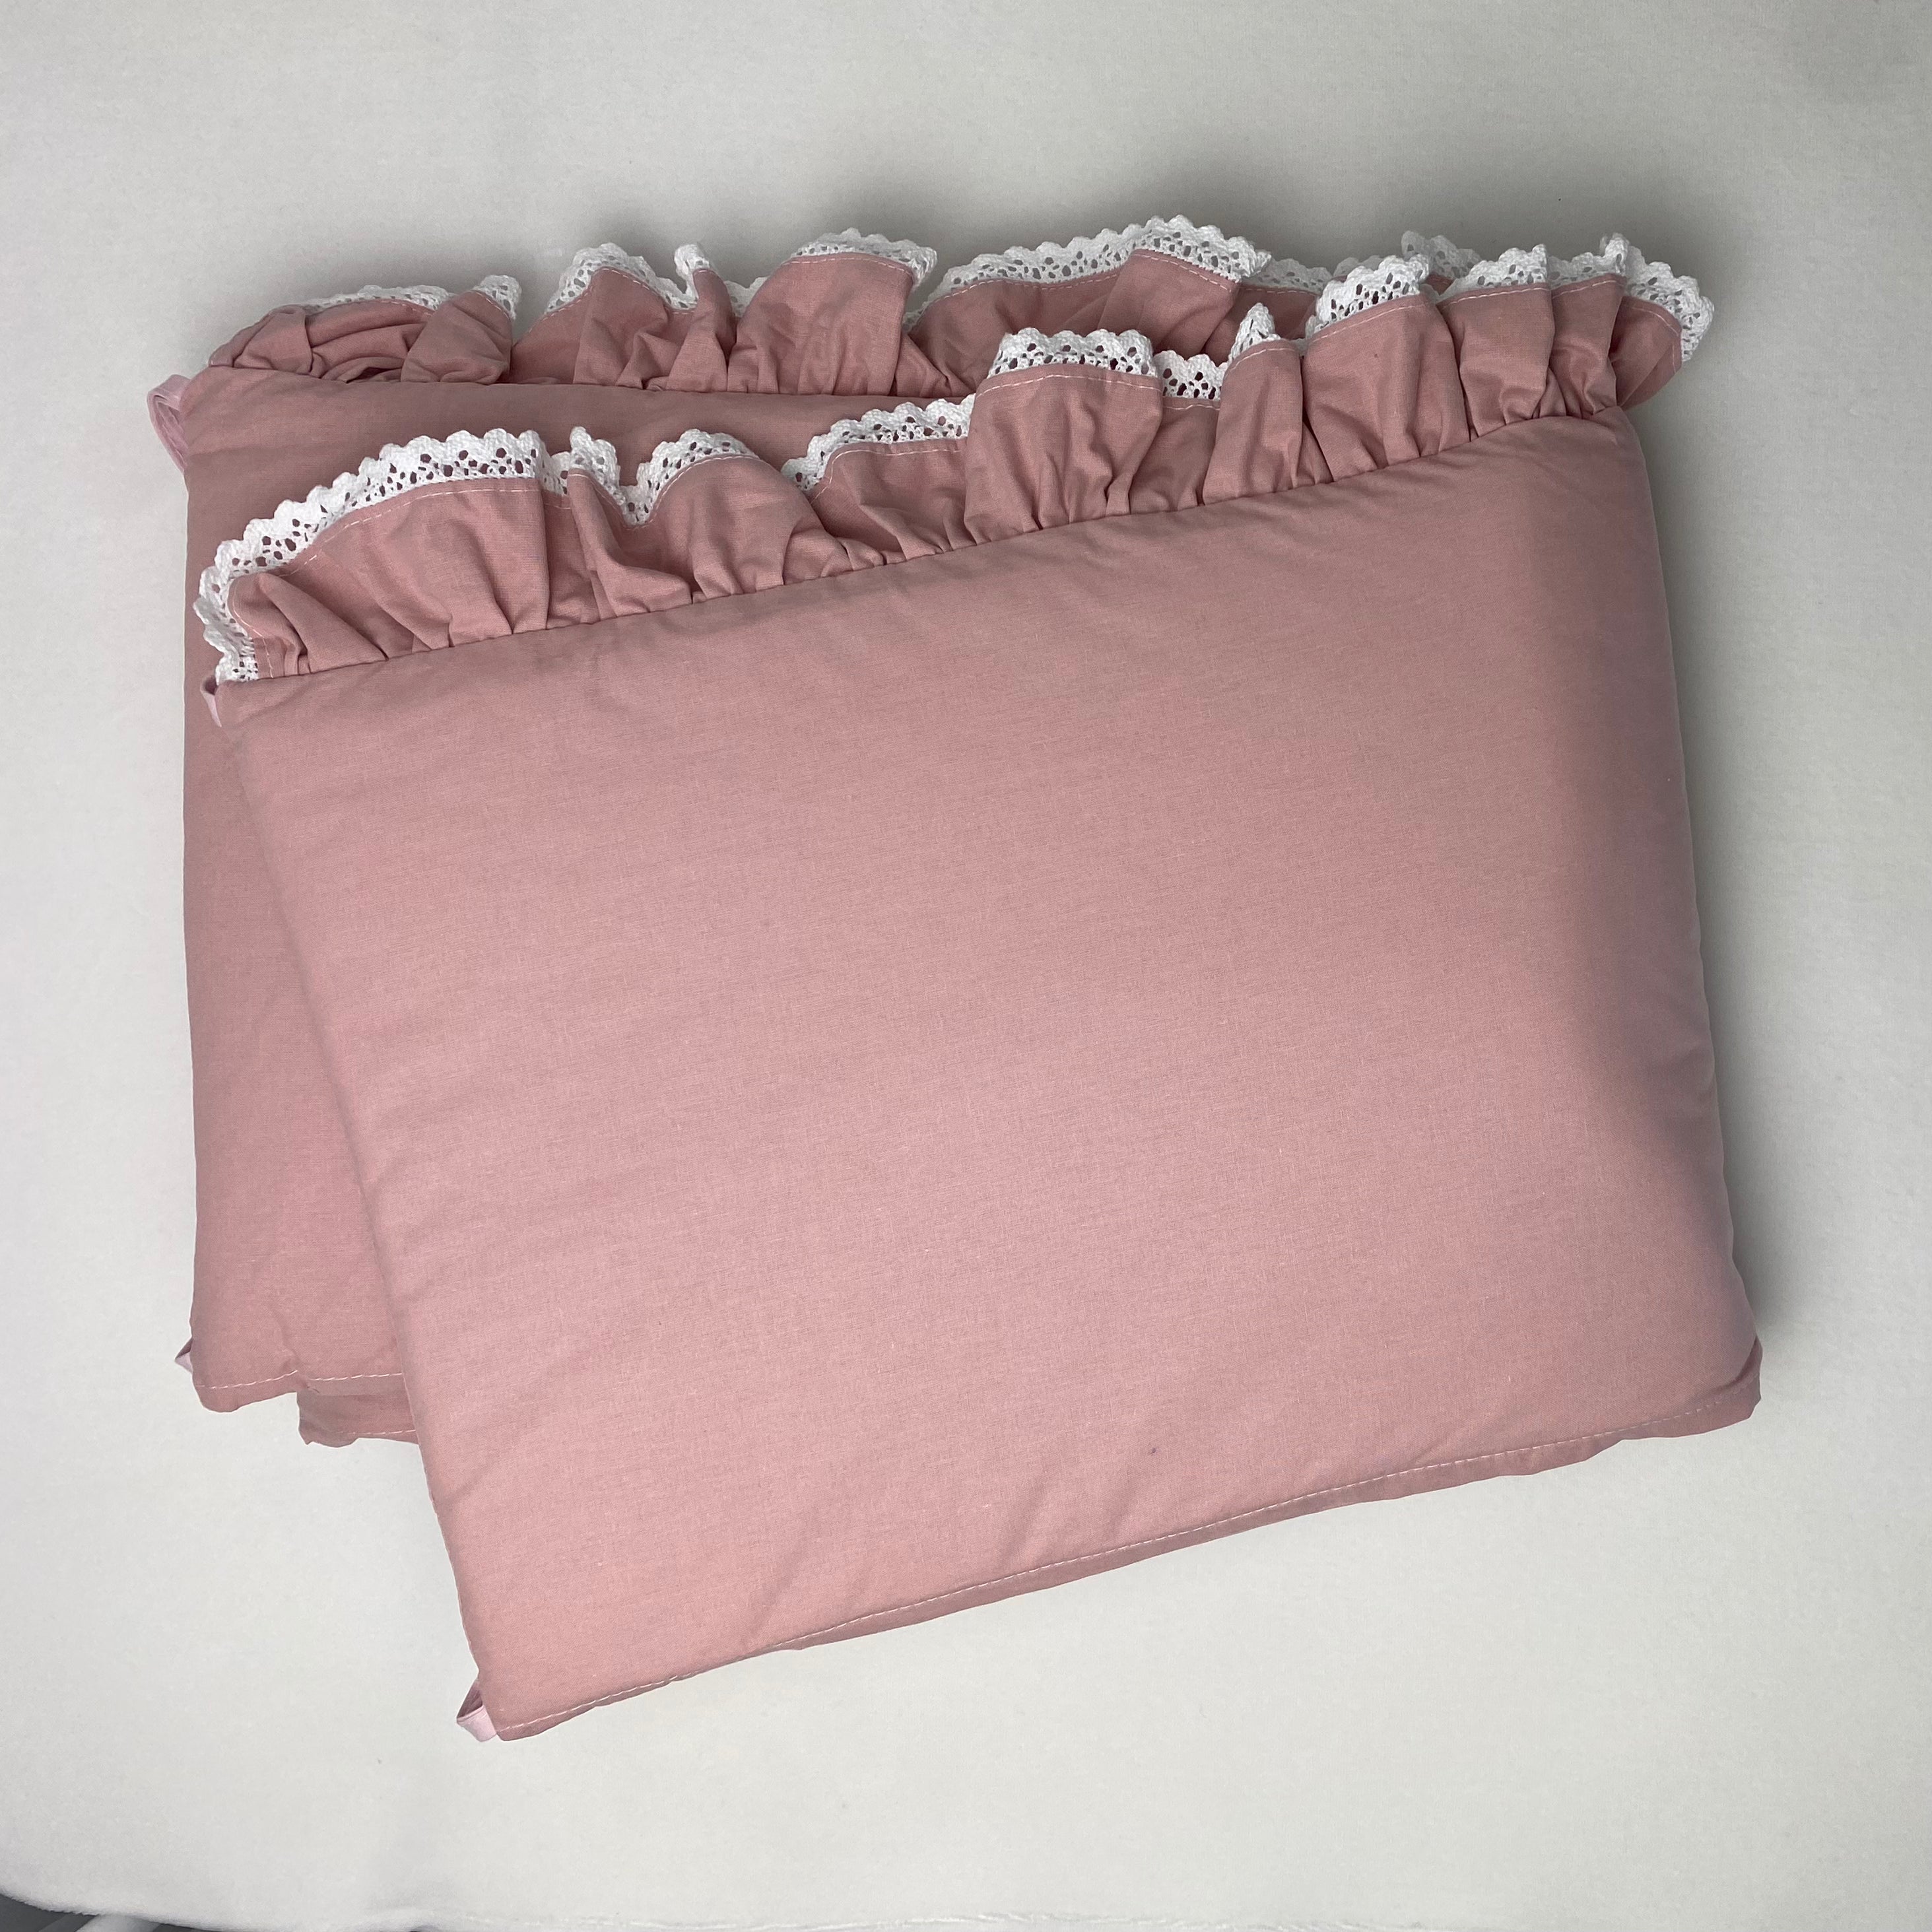 Bettumrandung Romantic mit Rüschen & weißer Spitze | Strawberry yogurt | 30x180 cm